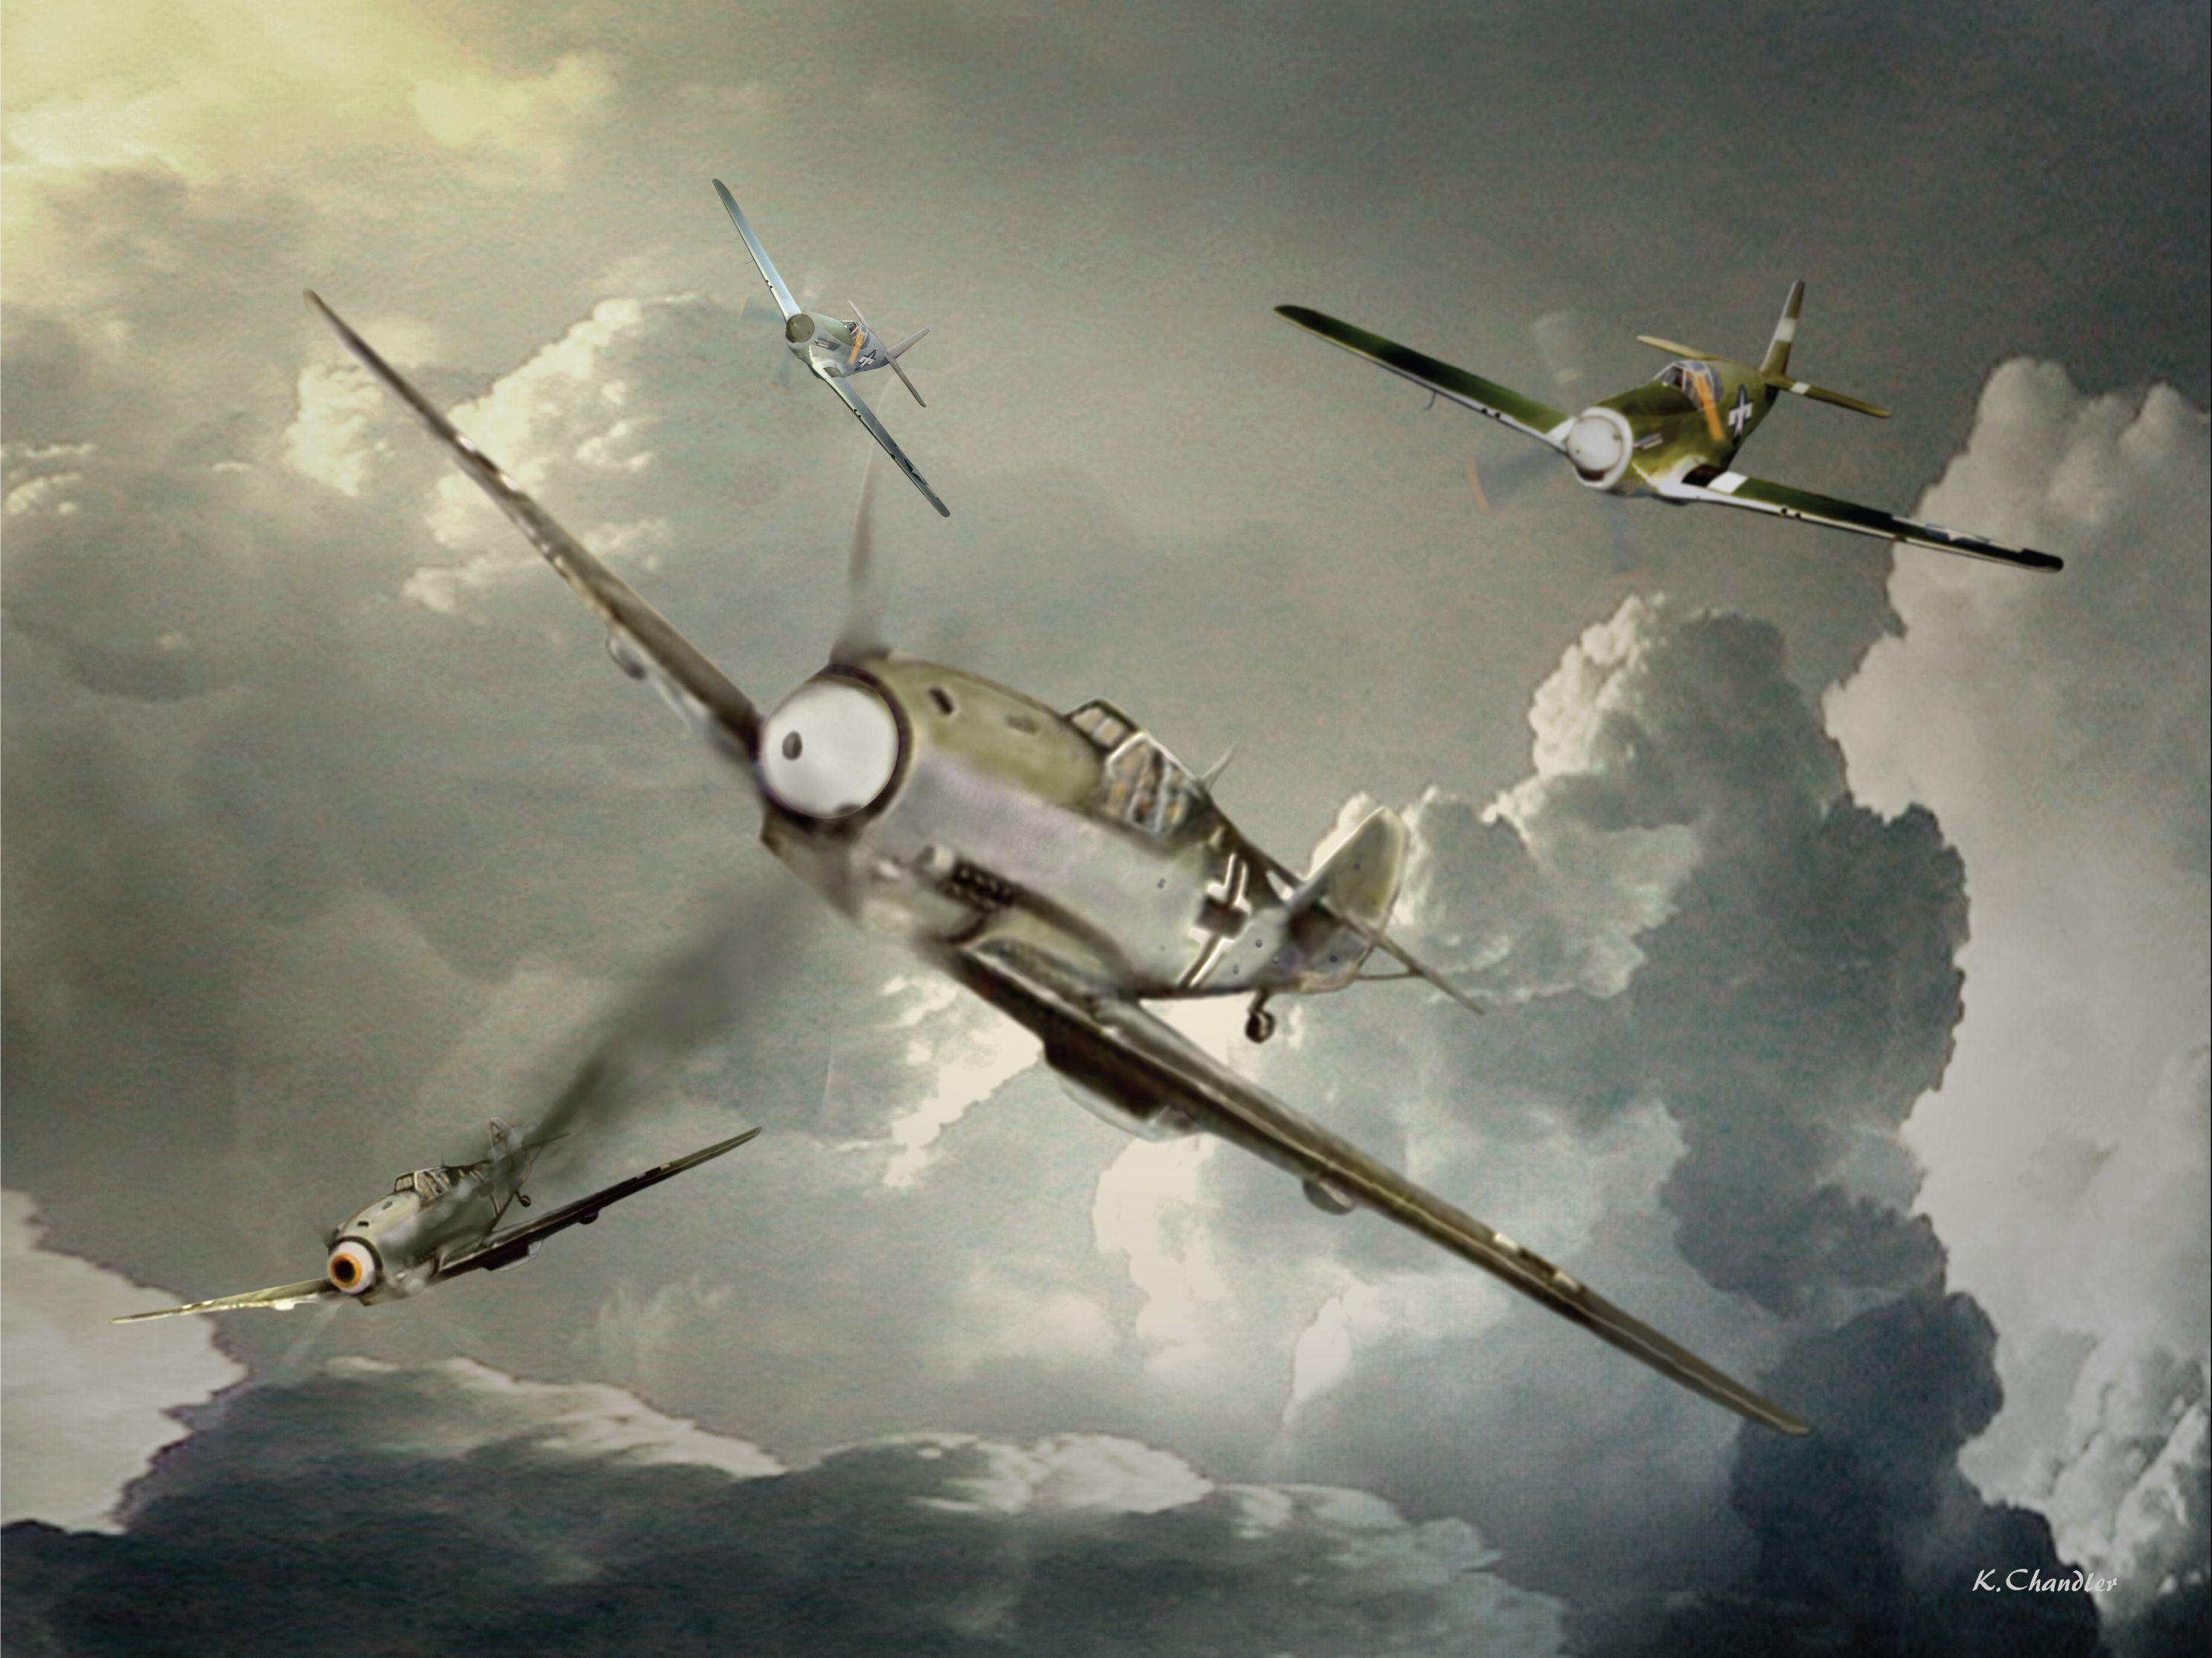 warplanes: ww2 dogfight pc